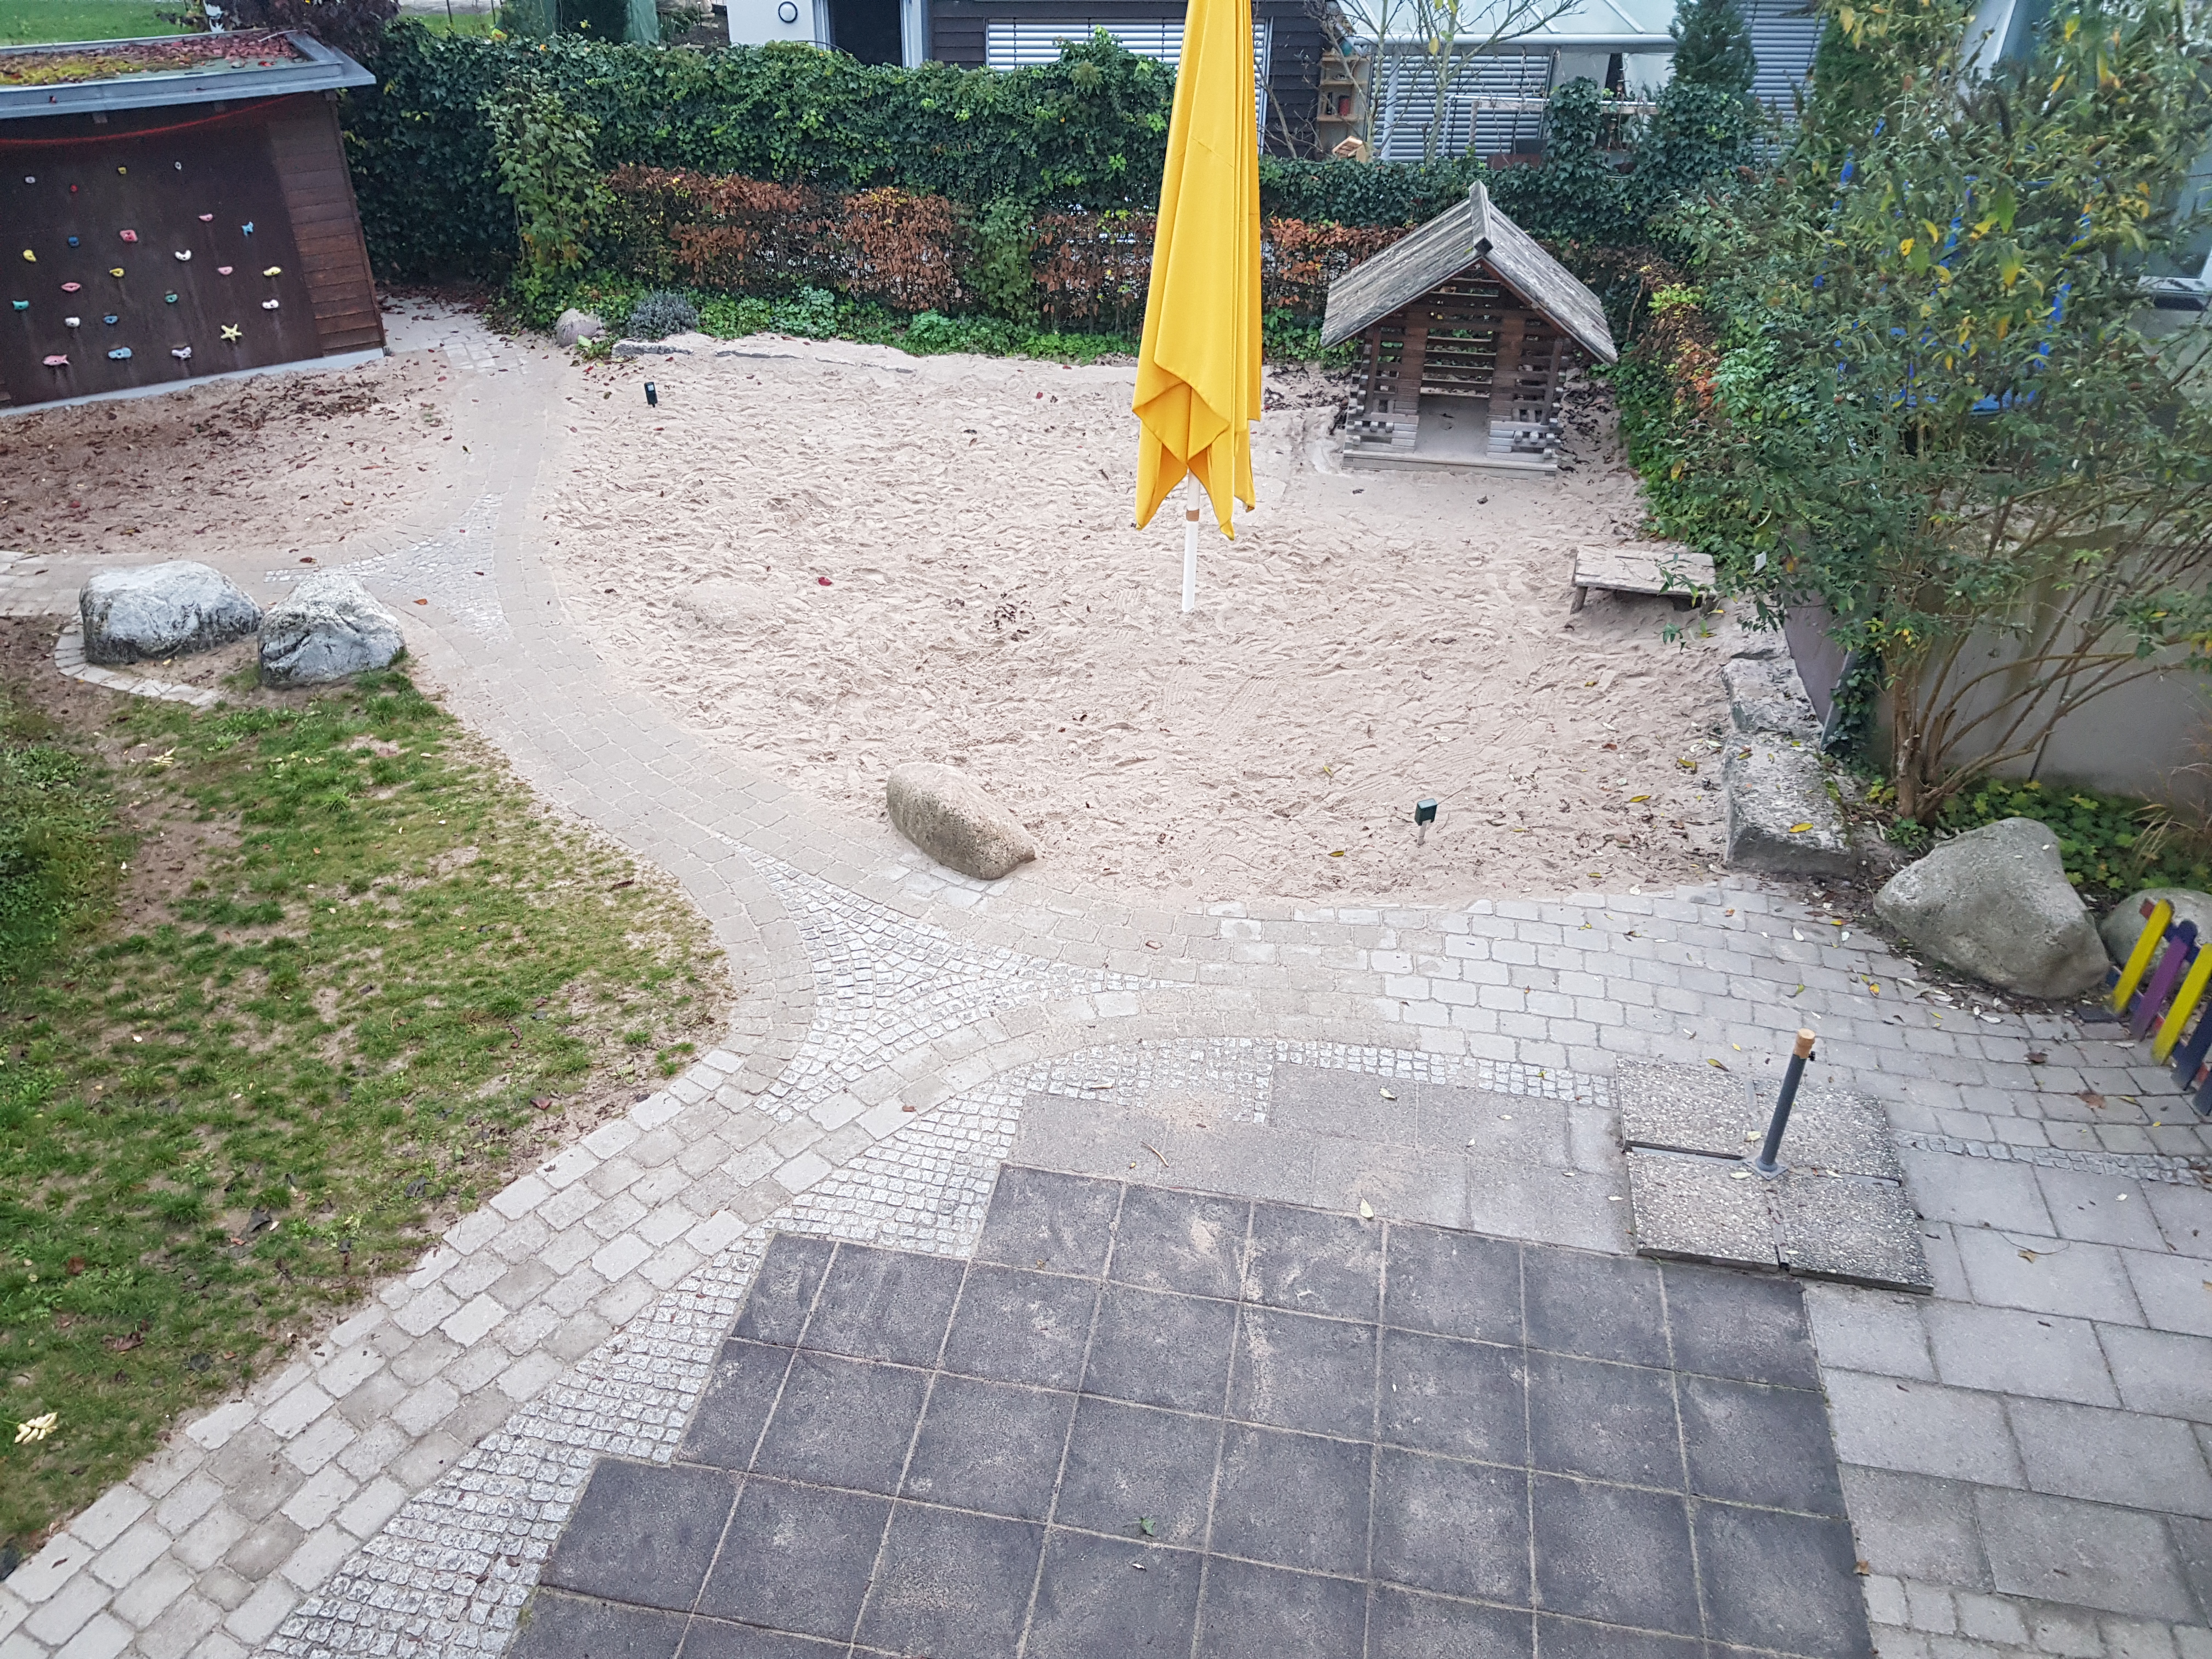 Hier sieht man den Sandkasten mit einem gelben Sonnenschirm, welcher nicht aufgespannt ist.